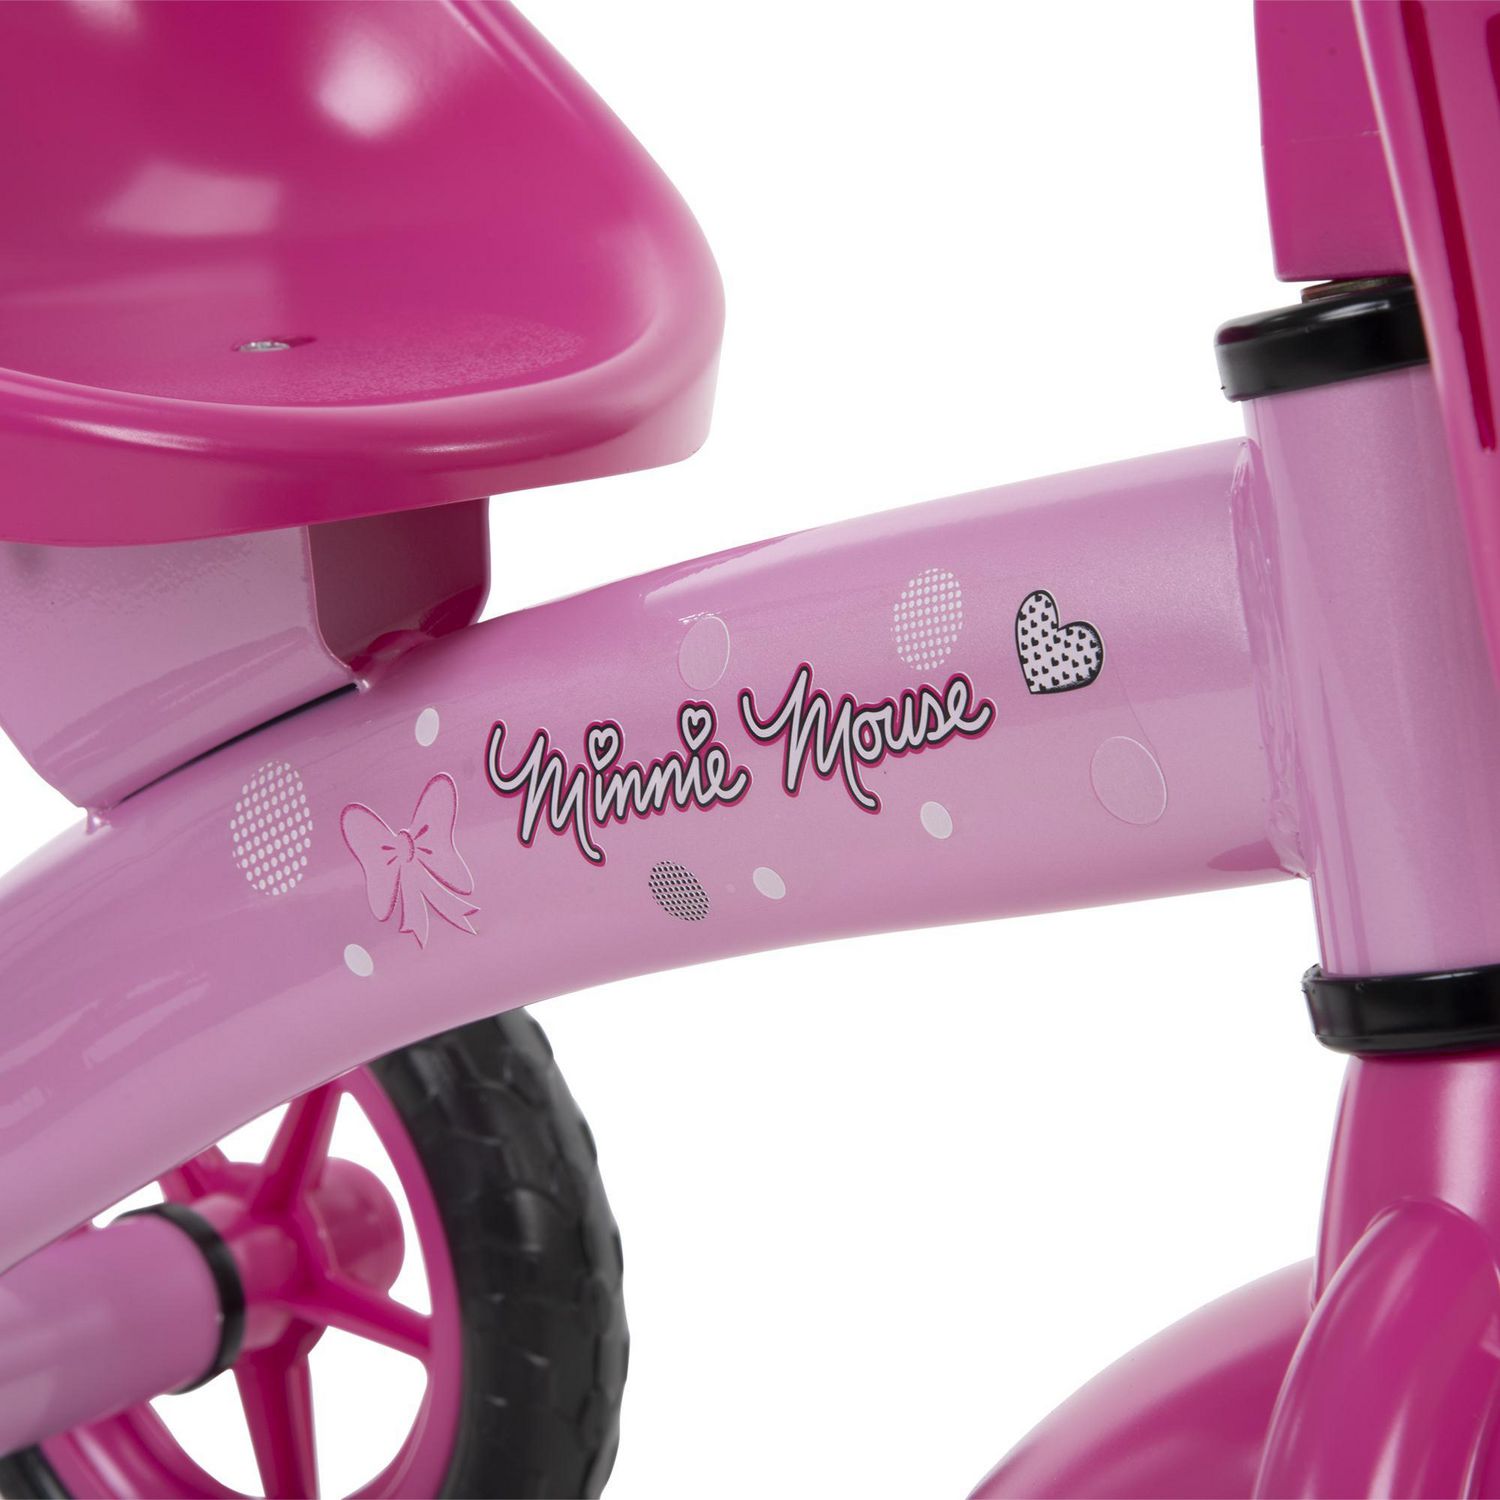 Trottinette préscolaire à 3 roues Minnie de Disney pour filles, par Huffy 